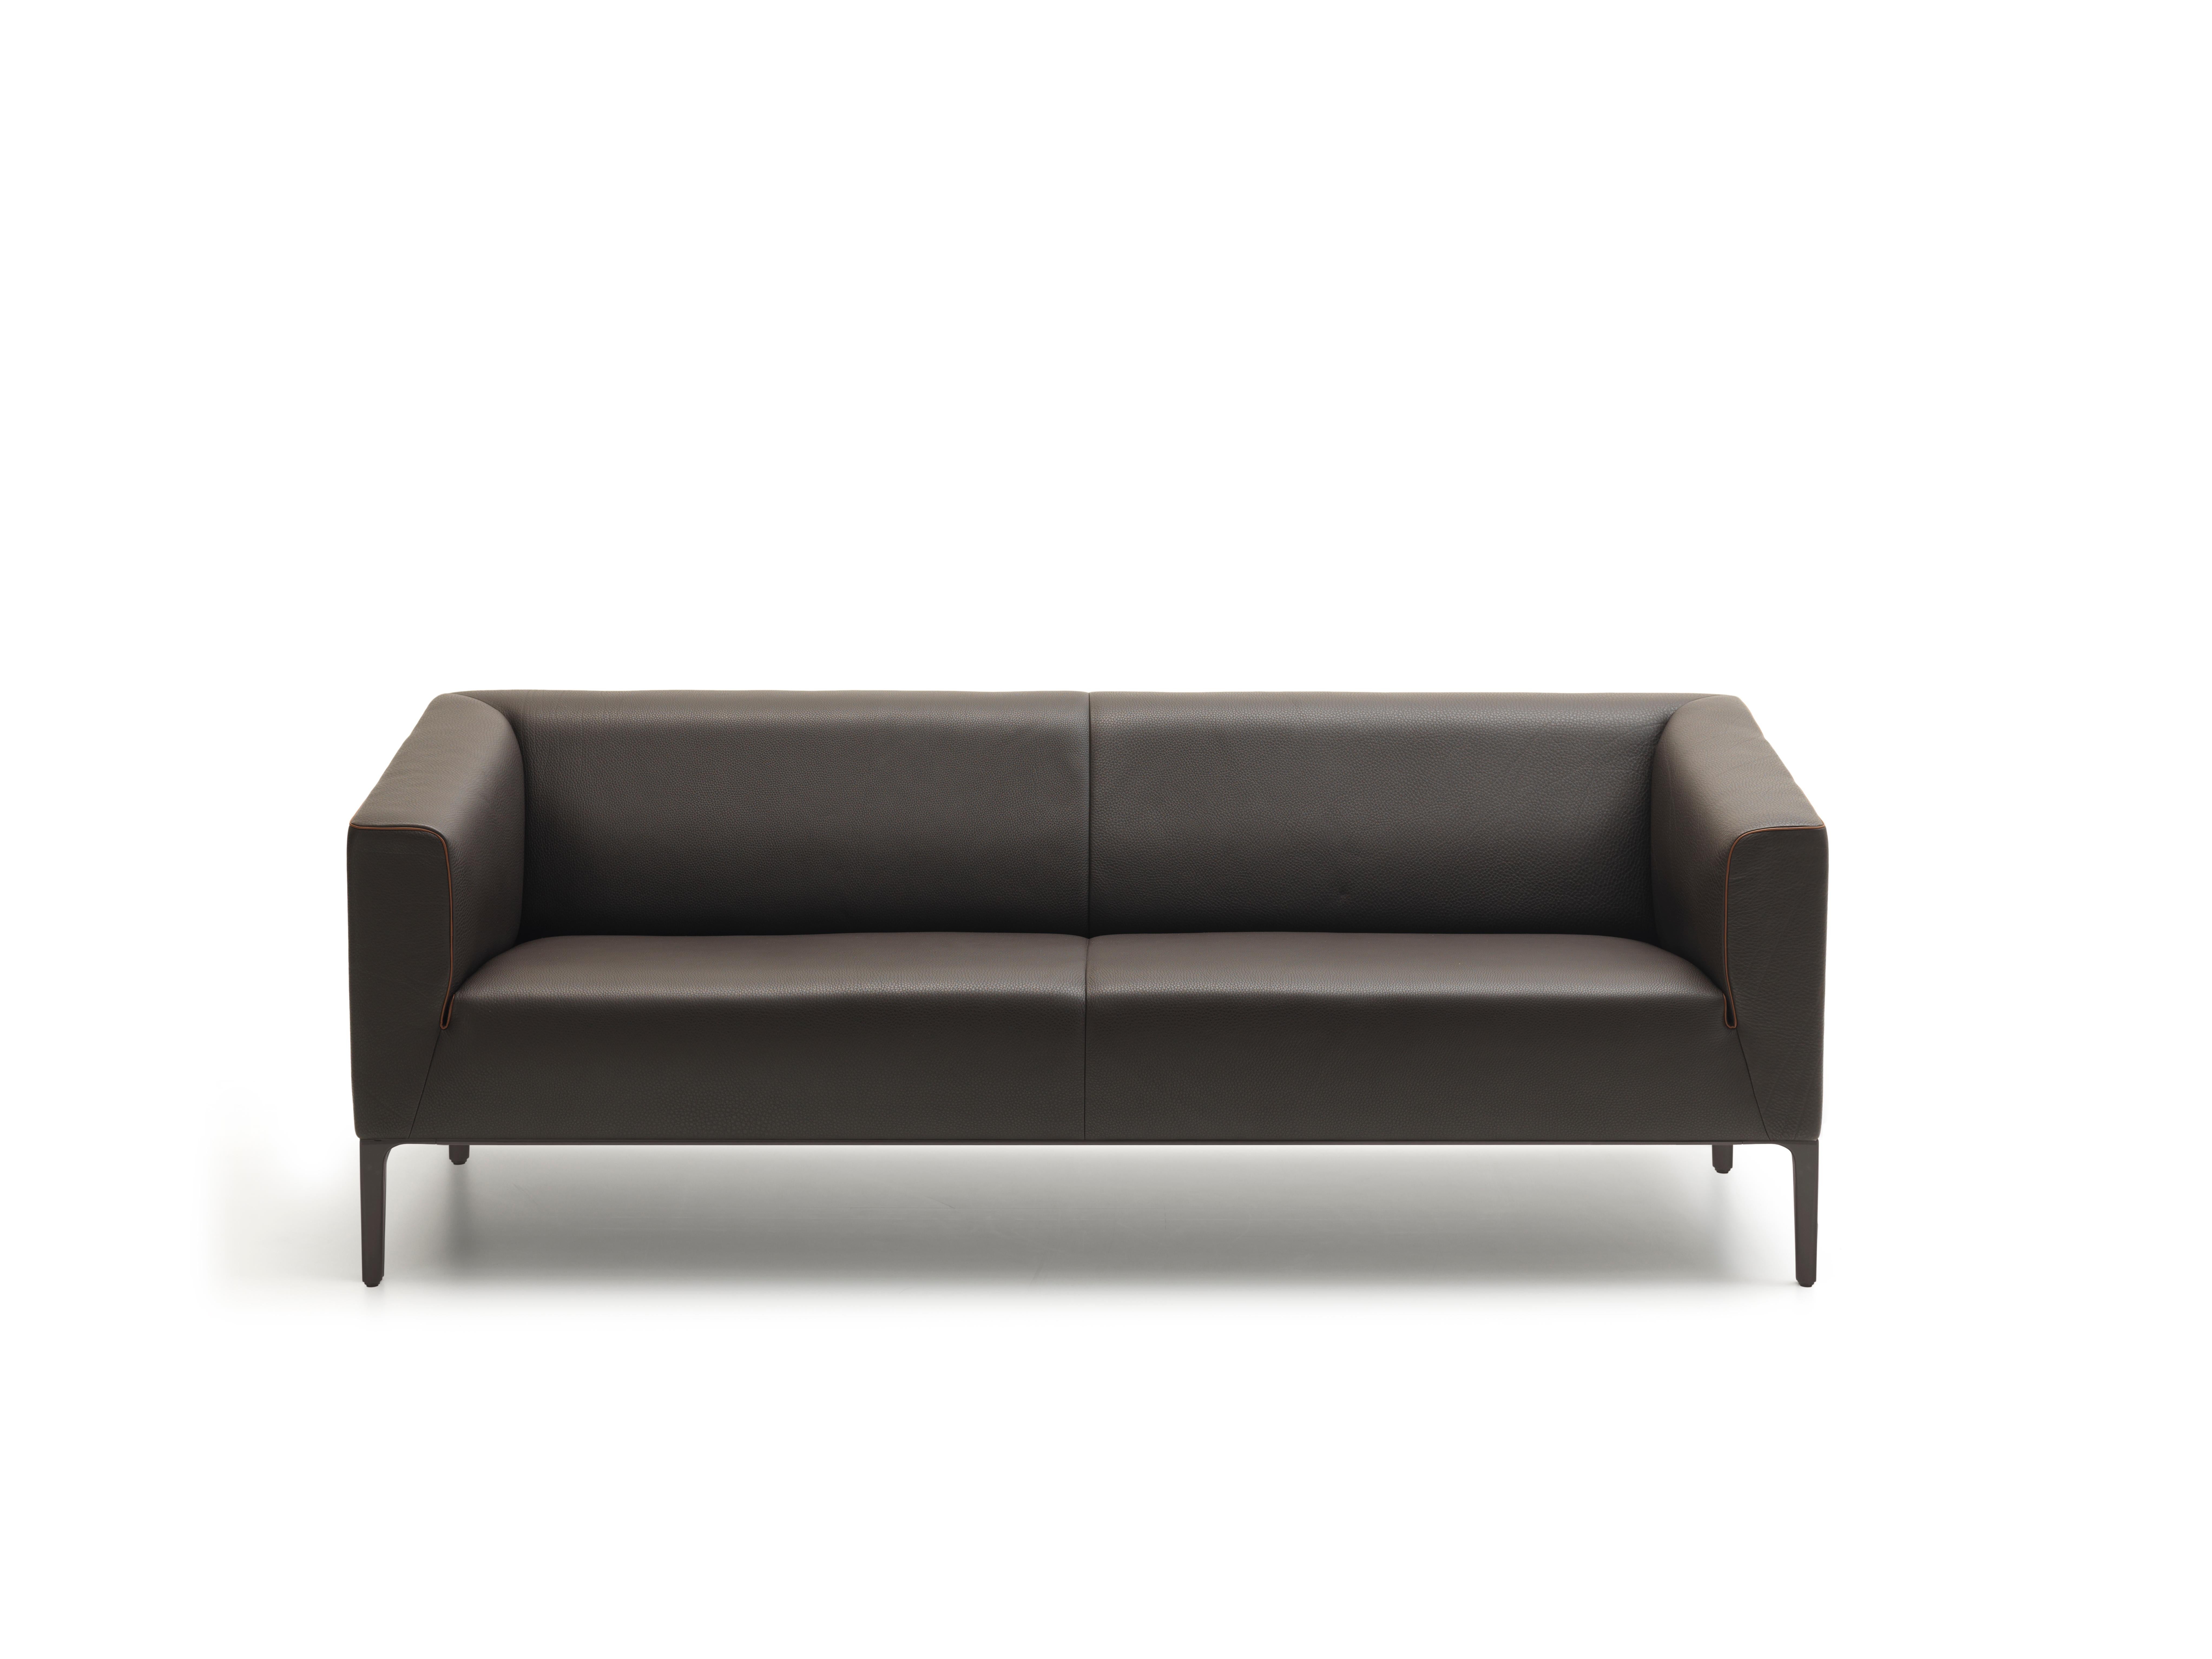 DS-161 sofa von De Sede
Abmessungen: T 54 x B 196 x H 72 cm
MATERIAL: Aluminium, Leder

Die Preise können sich je nach den gewählten Materialien und der Größe ändern. 

Eine geradlinige Außenkontur und ein runder Innenraum - die elegante